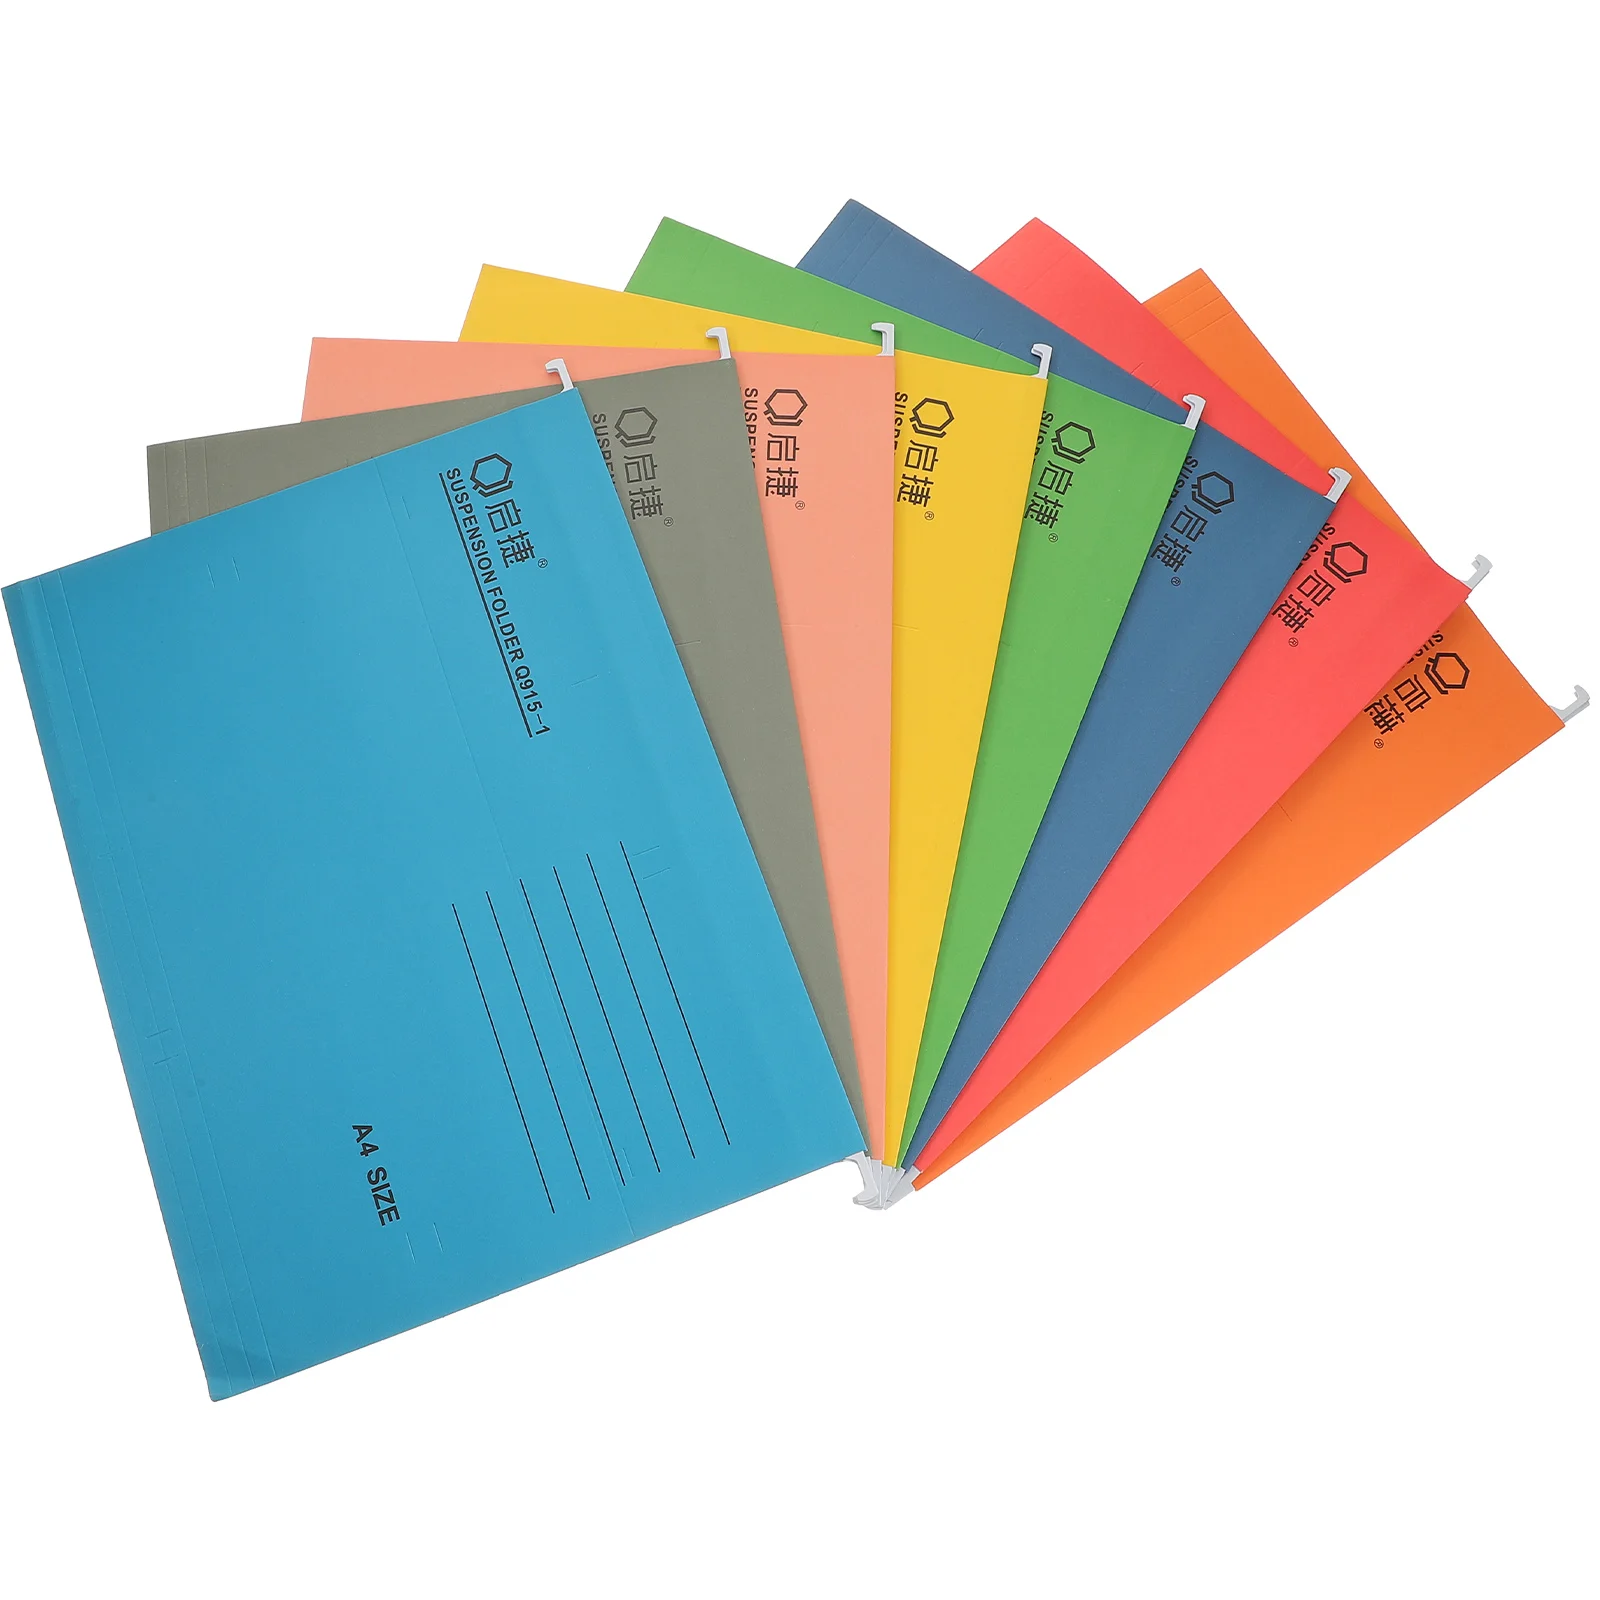 

8 PCS Office Supplies File Folder Hanging Holder Racks Desktop Manager Documents Organizer Color Folders